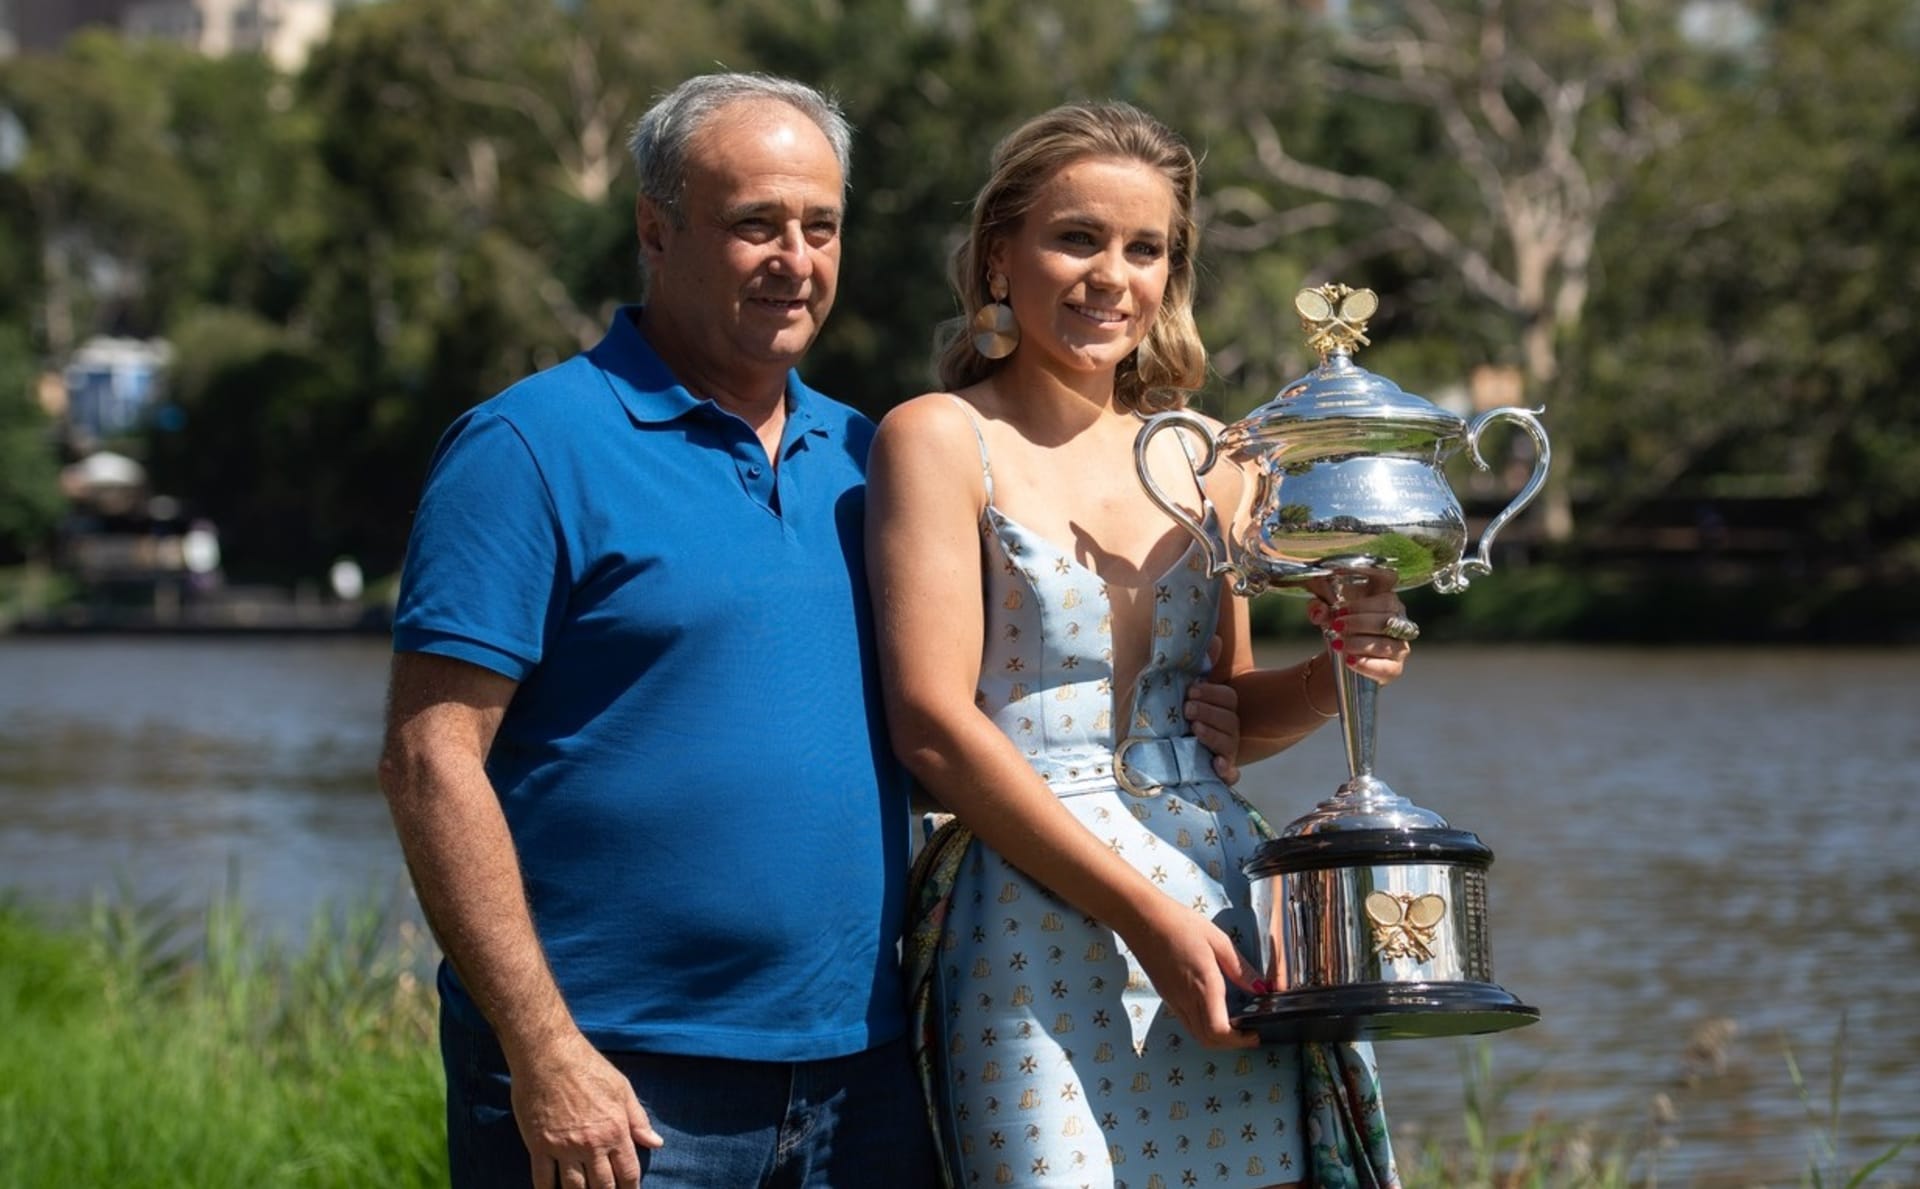 Tenistka Sofia Keninová ukončila spolupráci se svým otcem Alexanderem.